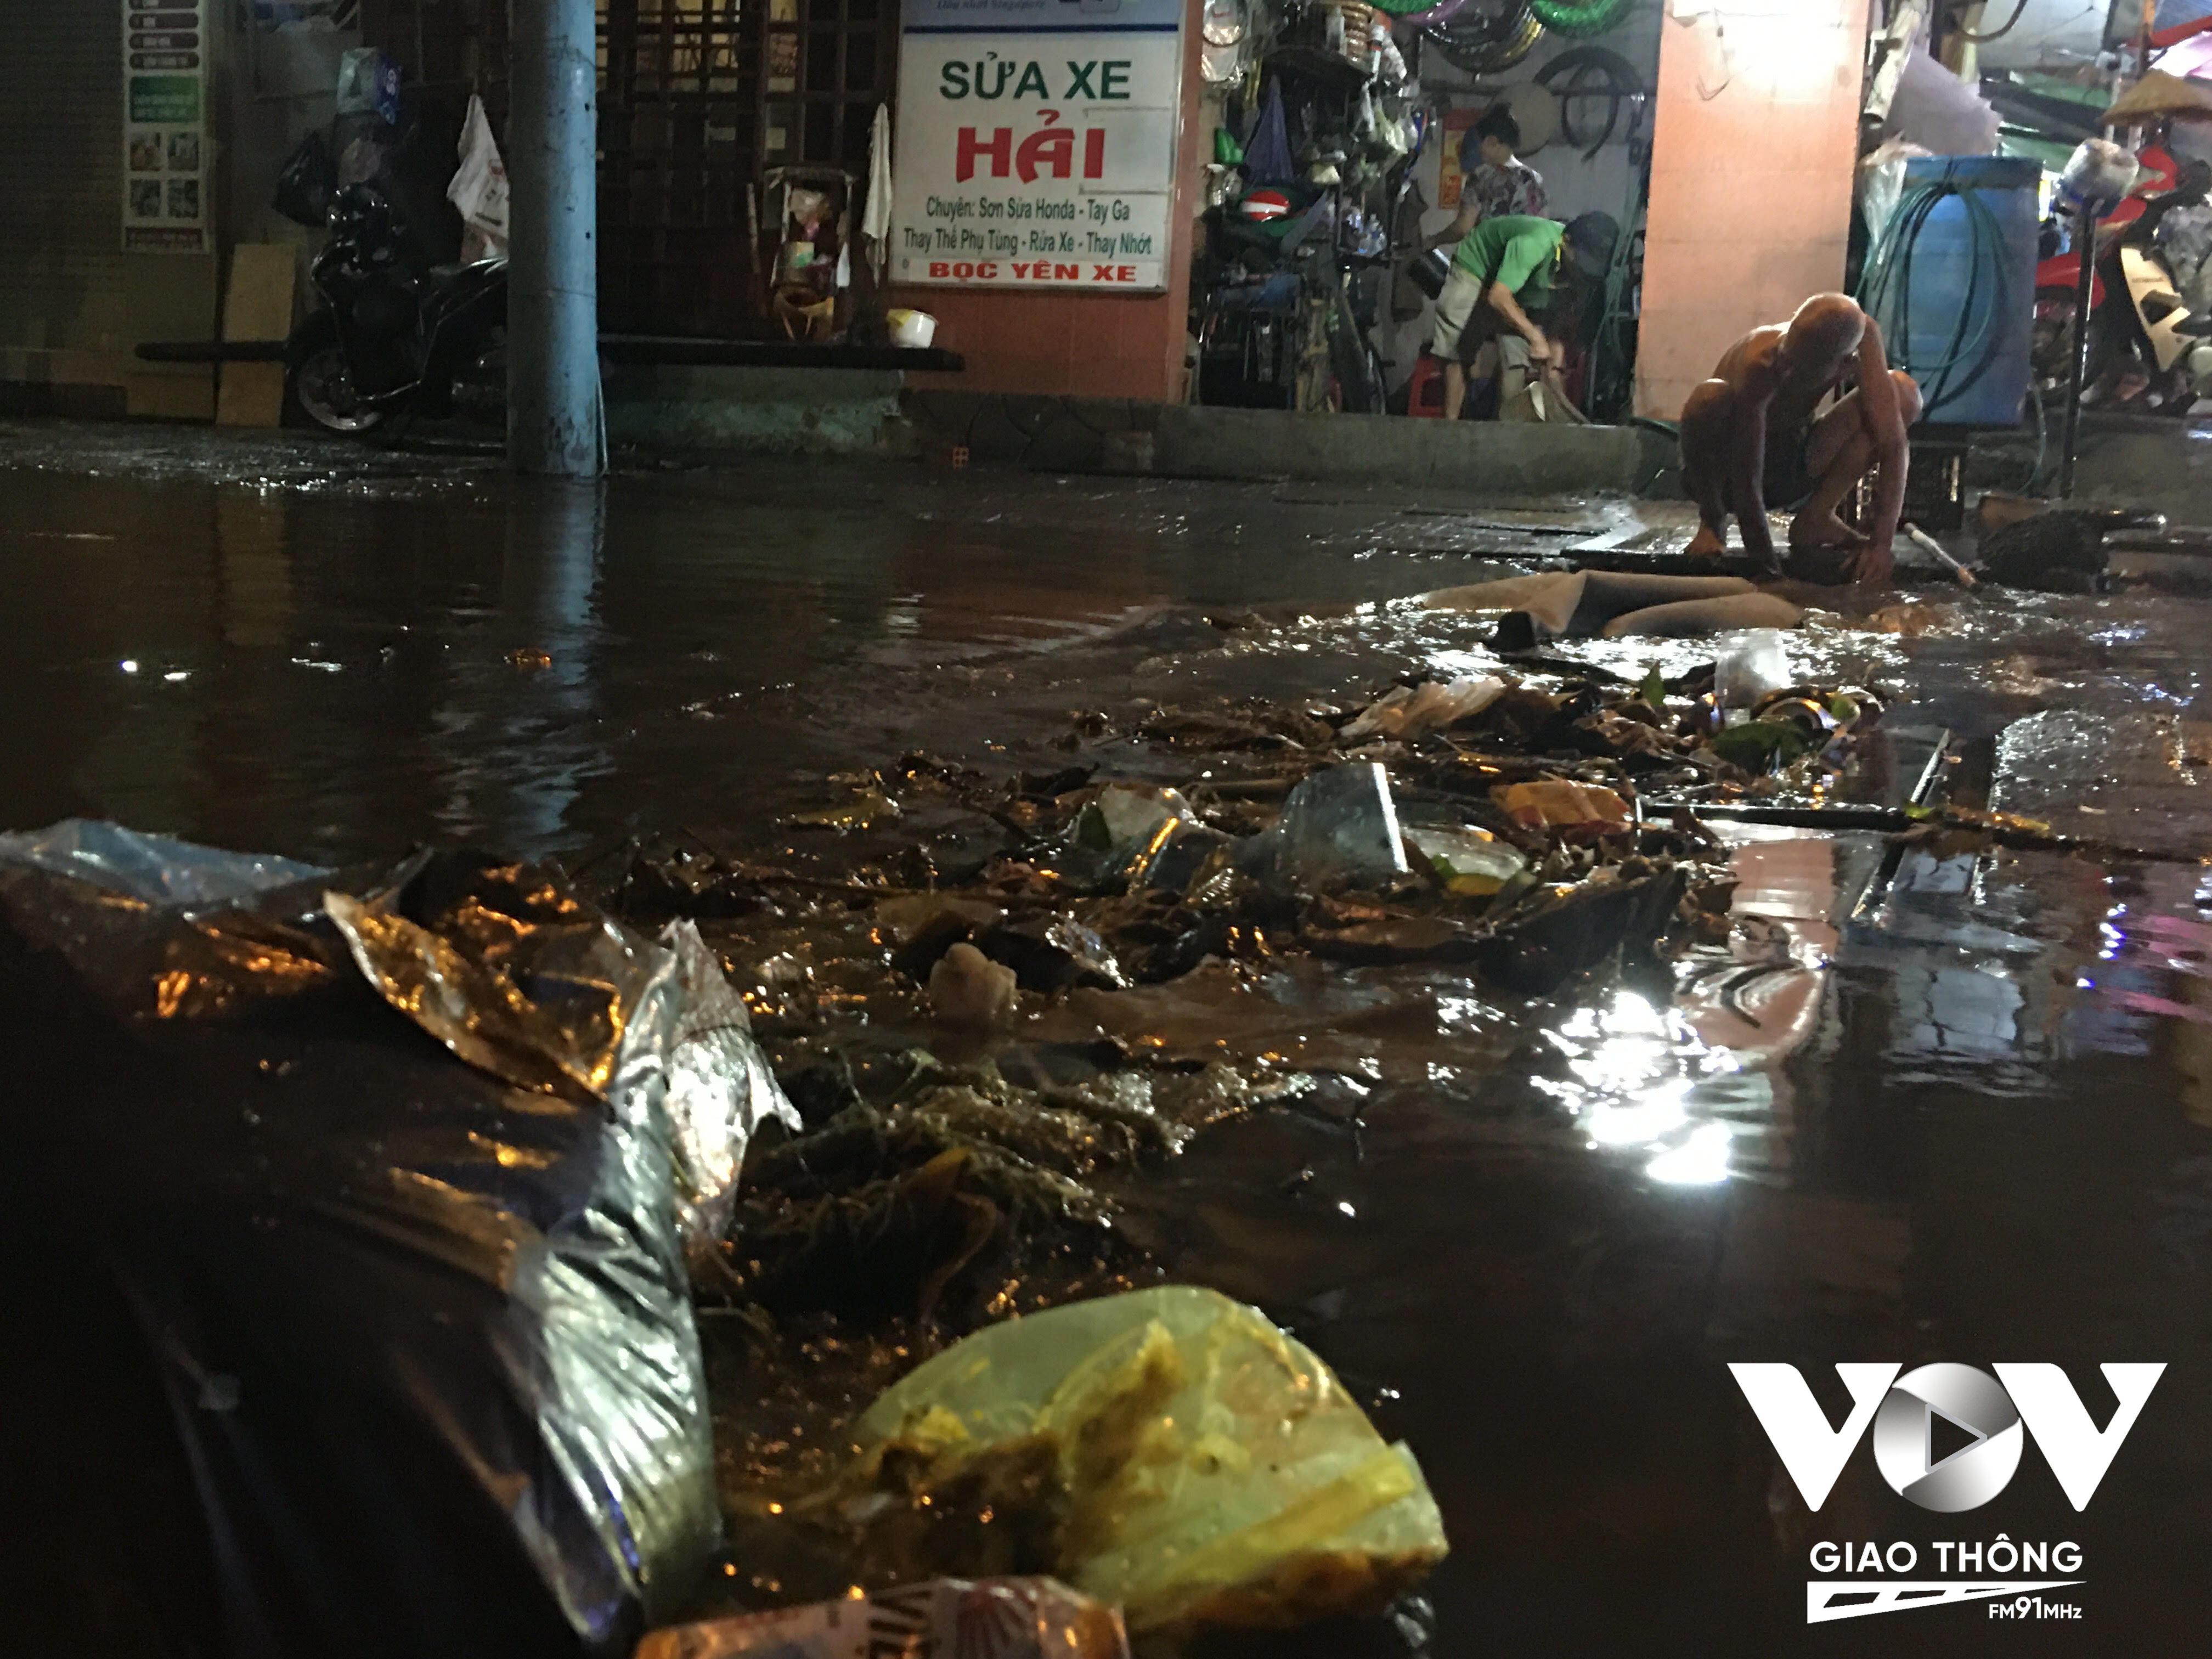 Đang lội nước để móc rác dưới cống thoát nước lên, ông Lập (81 tuổi, ngụ phường Phước Bình) cho biết, hiện đường số 8 đang nâng cấp sửa chữa đến 4 tháng vẫn chưa thi công xong.